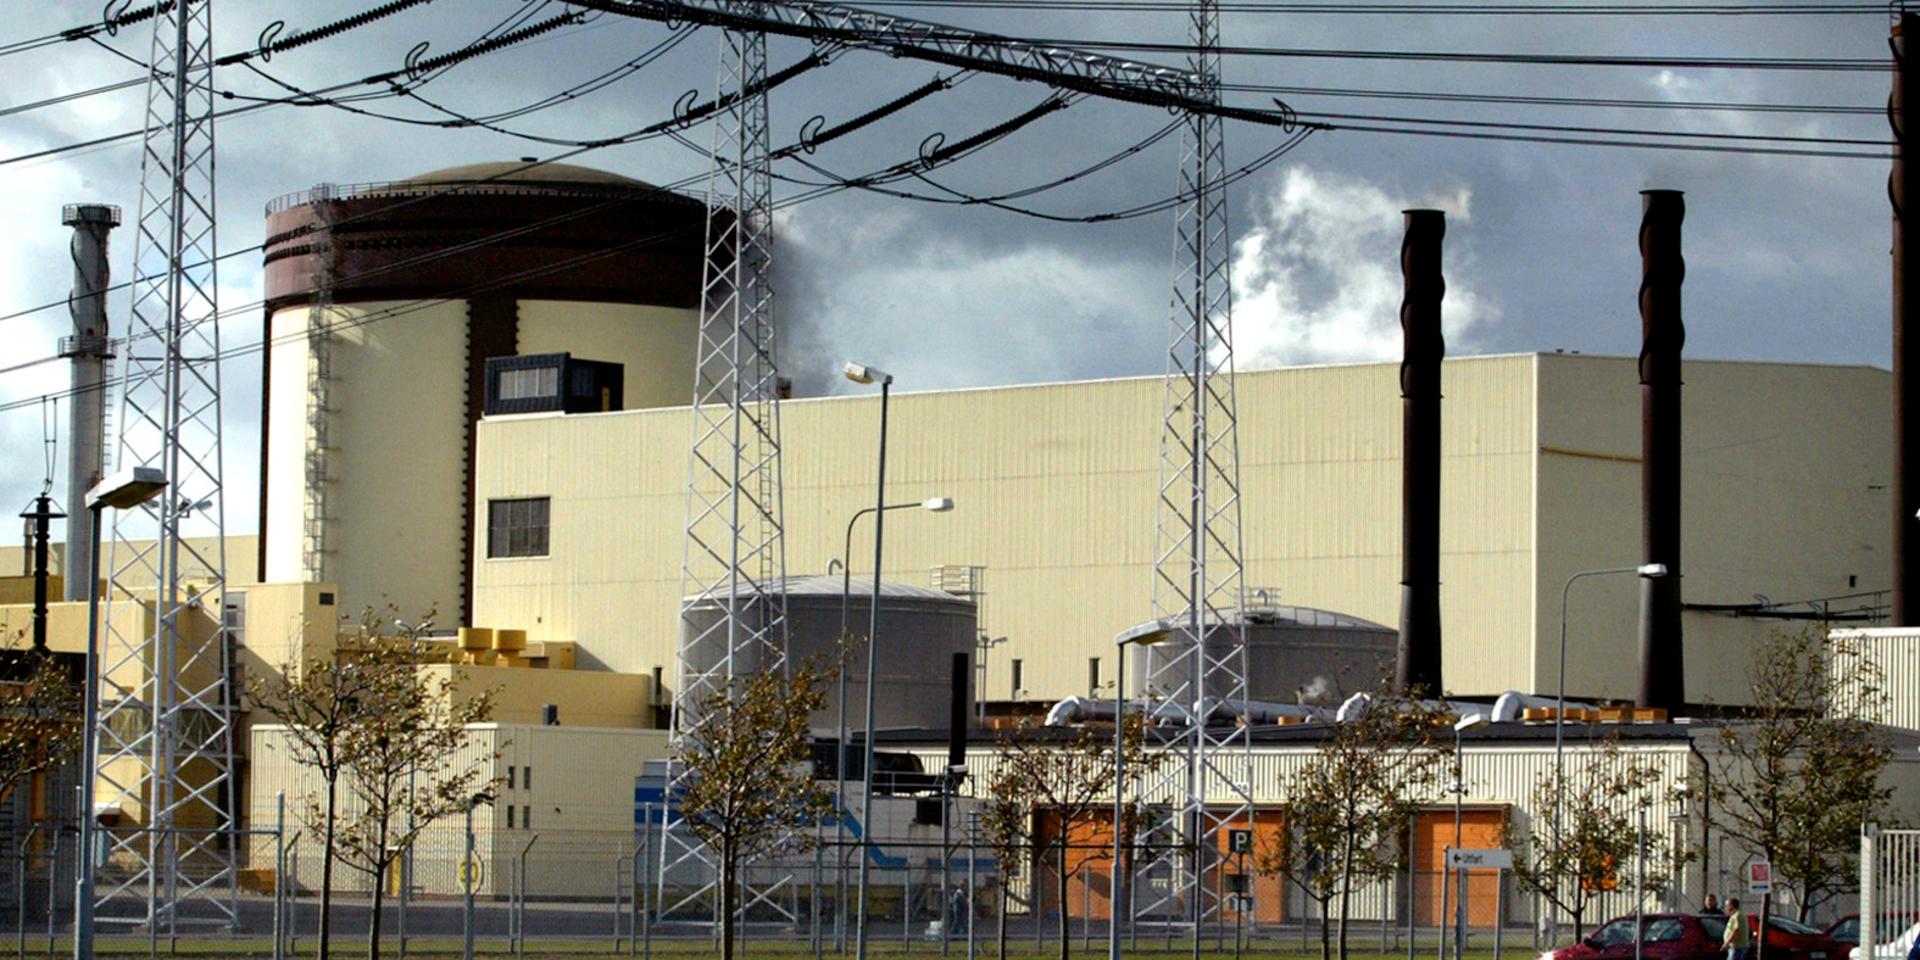 Ringhals 3 och 4 är två kärnreaktorer som är aktiva i Sverige. Debatten om kärnkraftens vara eller icke-vara är ständigt aktuell. Genrebild